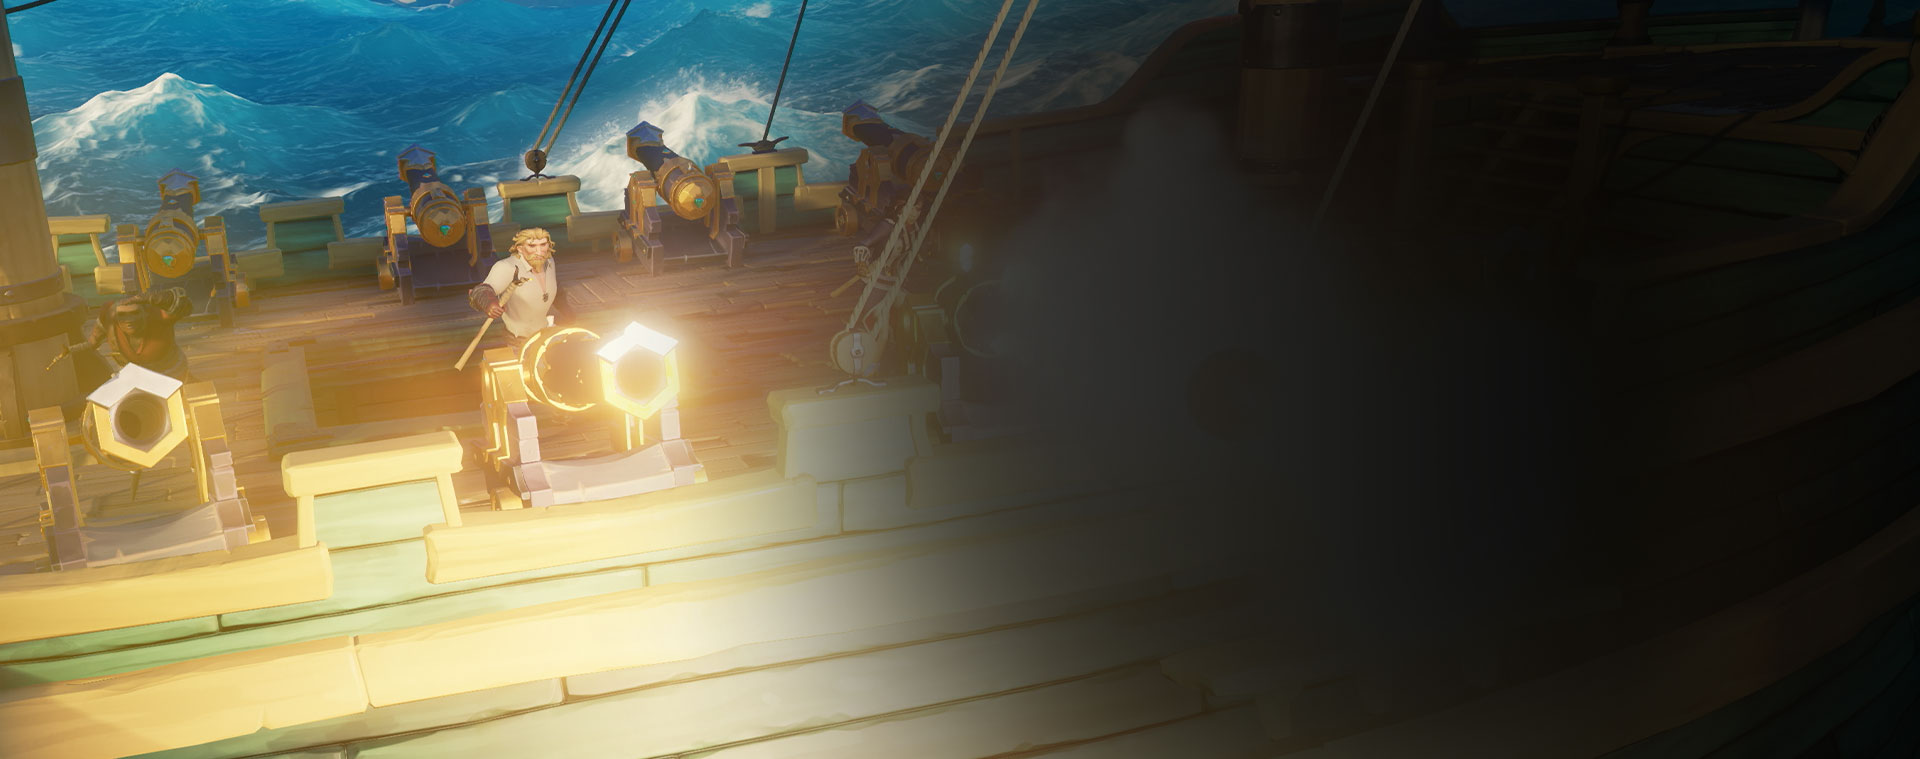 船から大砲を撃つ「Sea of Thieves」 のキャラクター